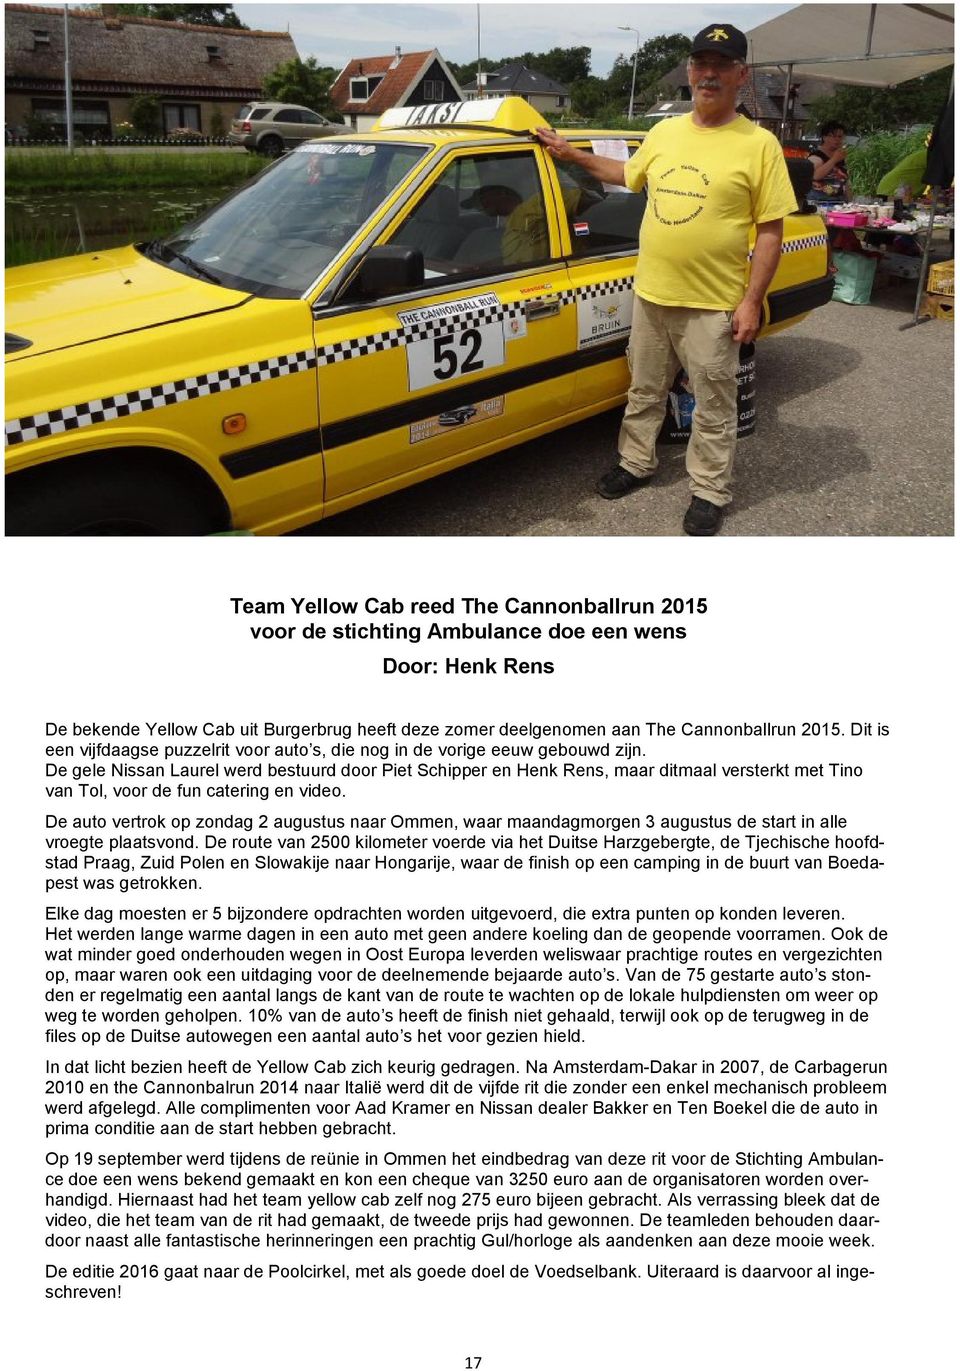 De gele Nissan Laurel werd bestuurd door Piet Schipper en Henk Rens, maar ditmaal versterkt met Tino van Tol, voor de fun catering en video.